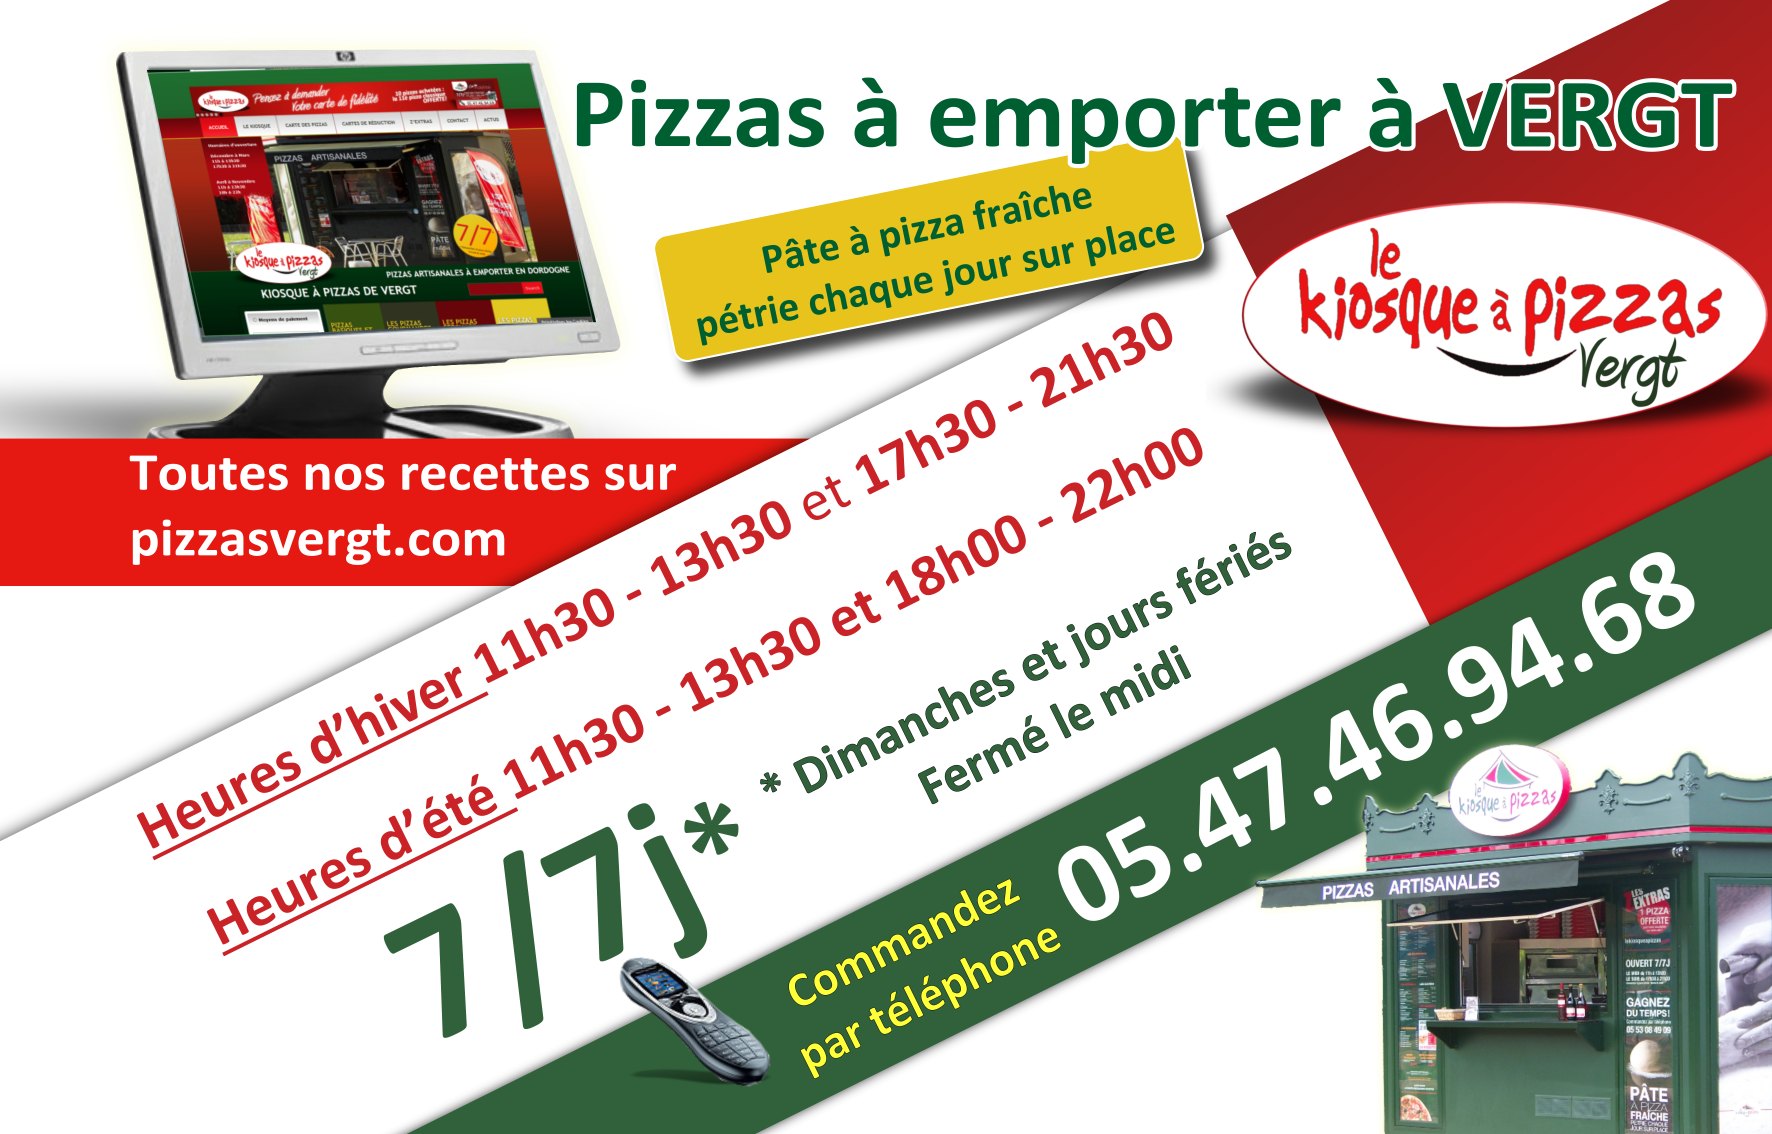 Création Graphique - encarts publictaire journal - kiosque a pizzas-2015